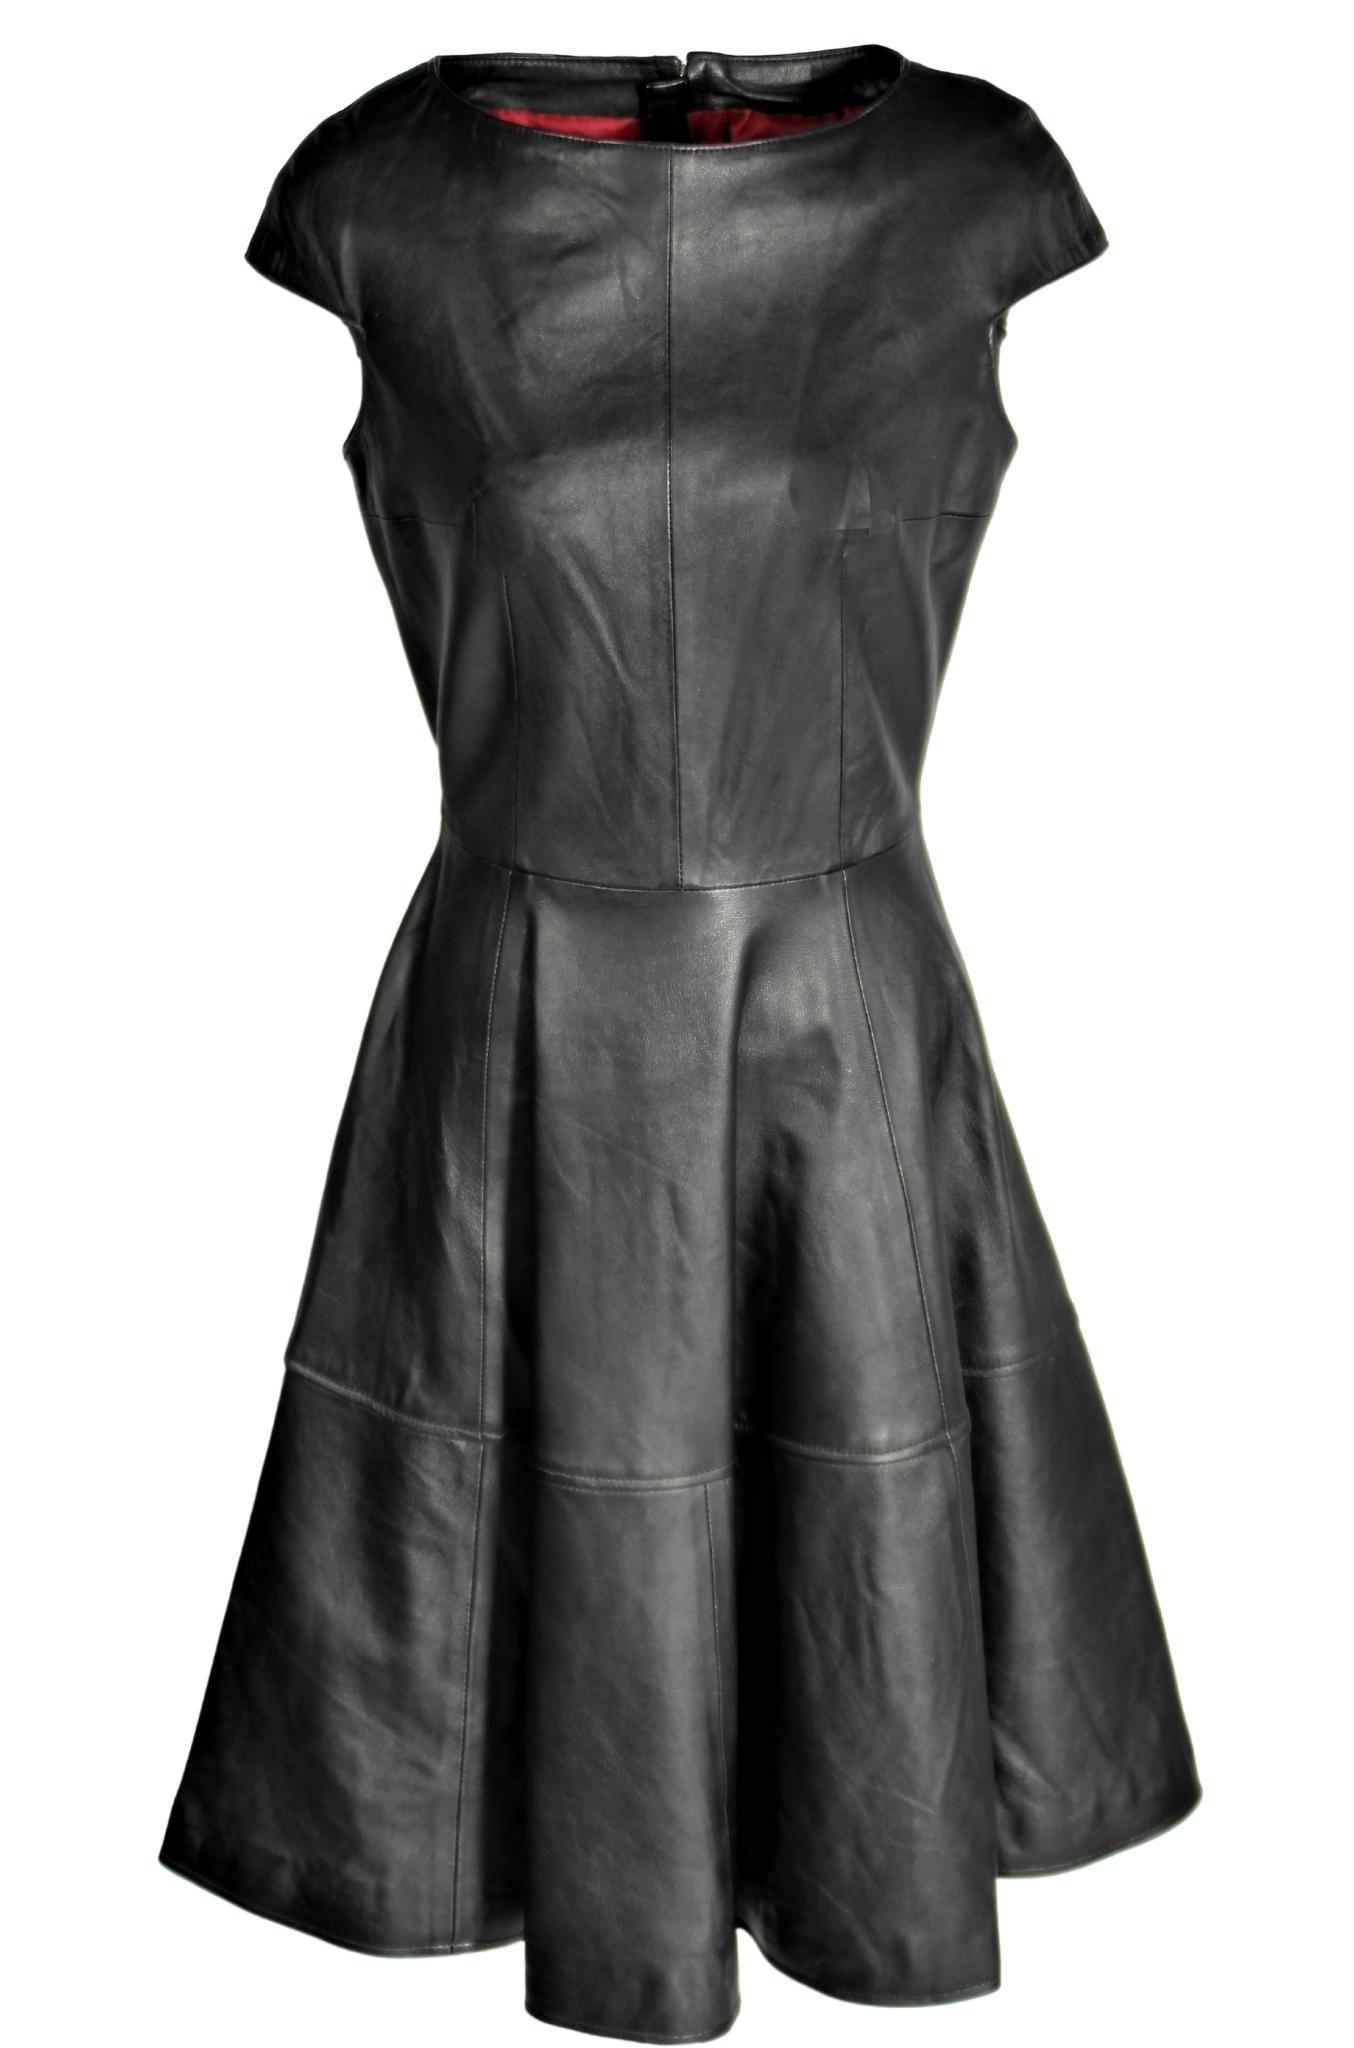 A-Style - vestido de cuero en cuero REAL ROJO - Merano